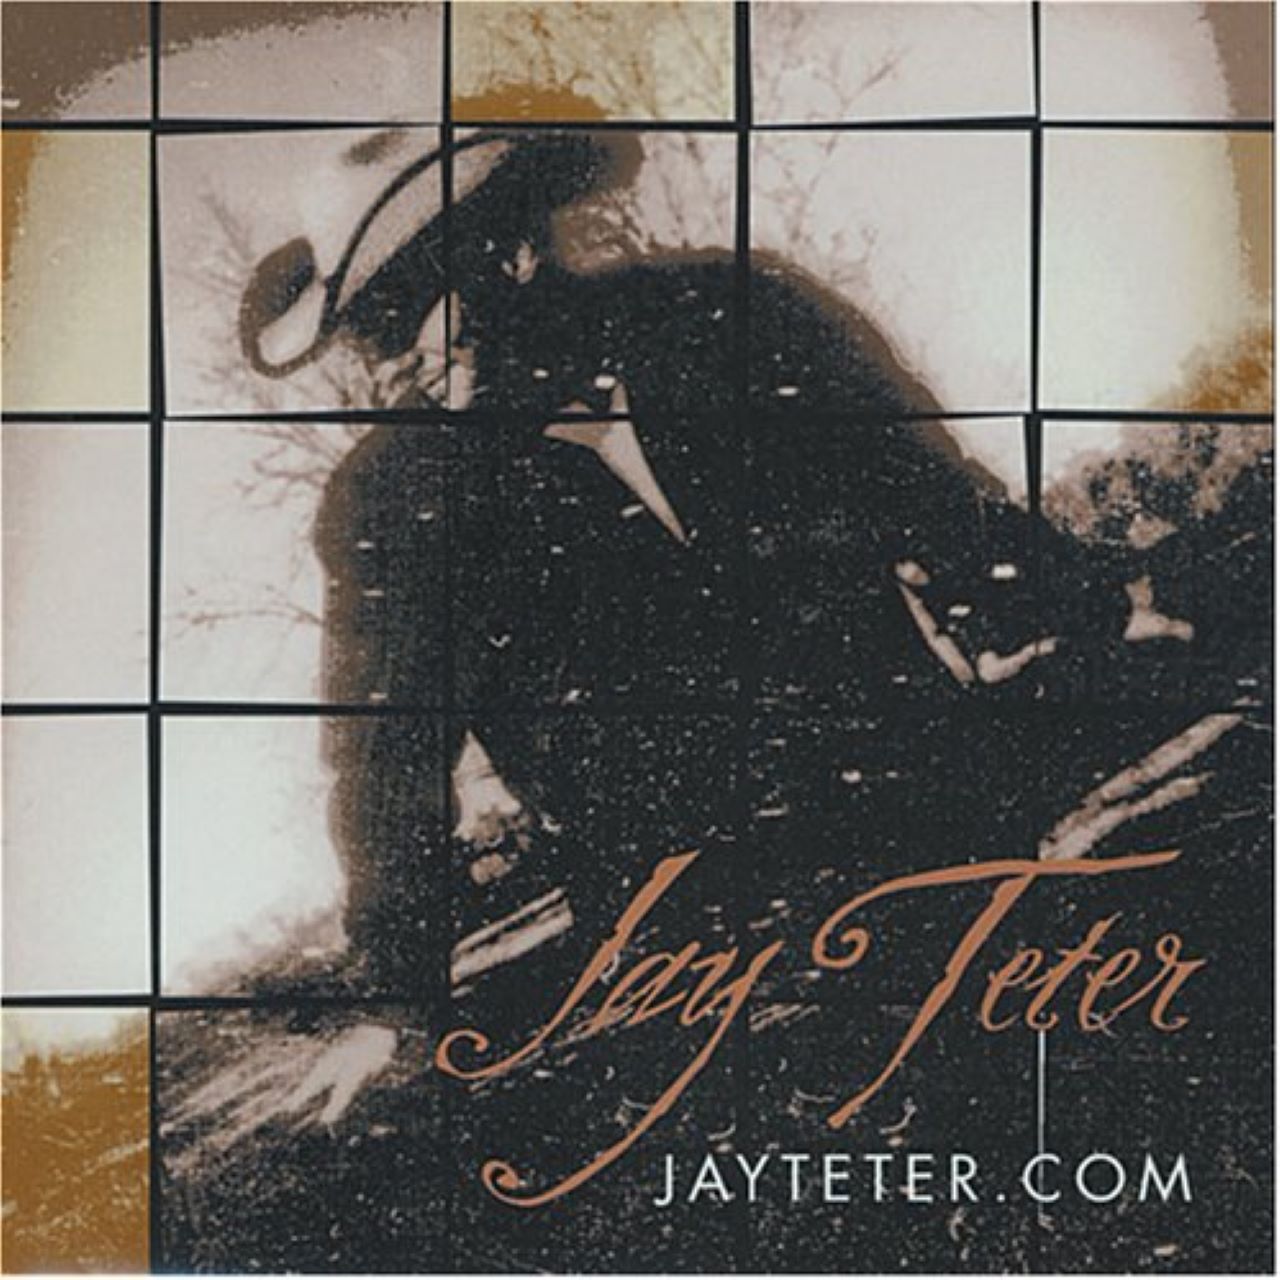 Jay Teter - Jayteter.com cover album